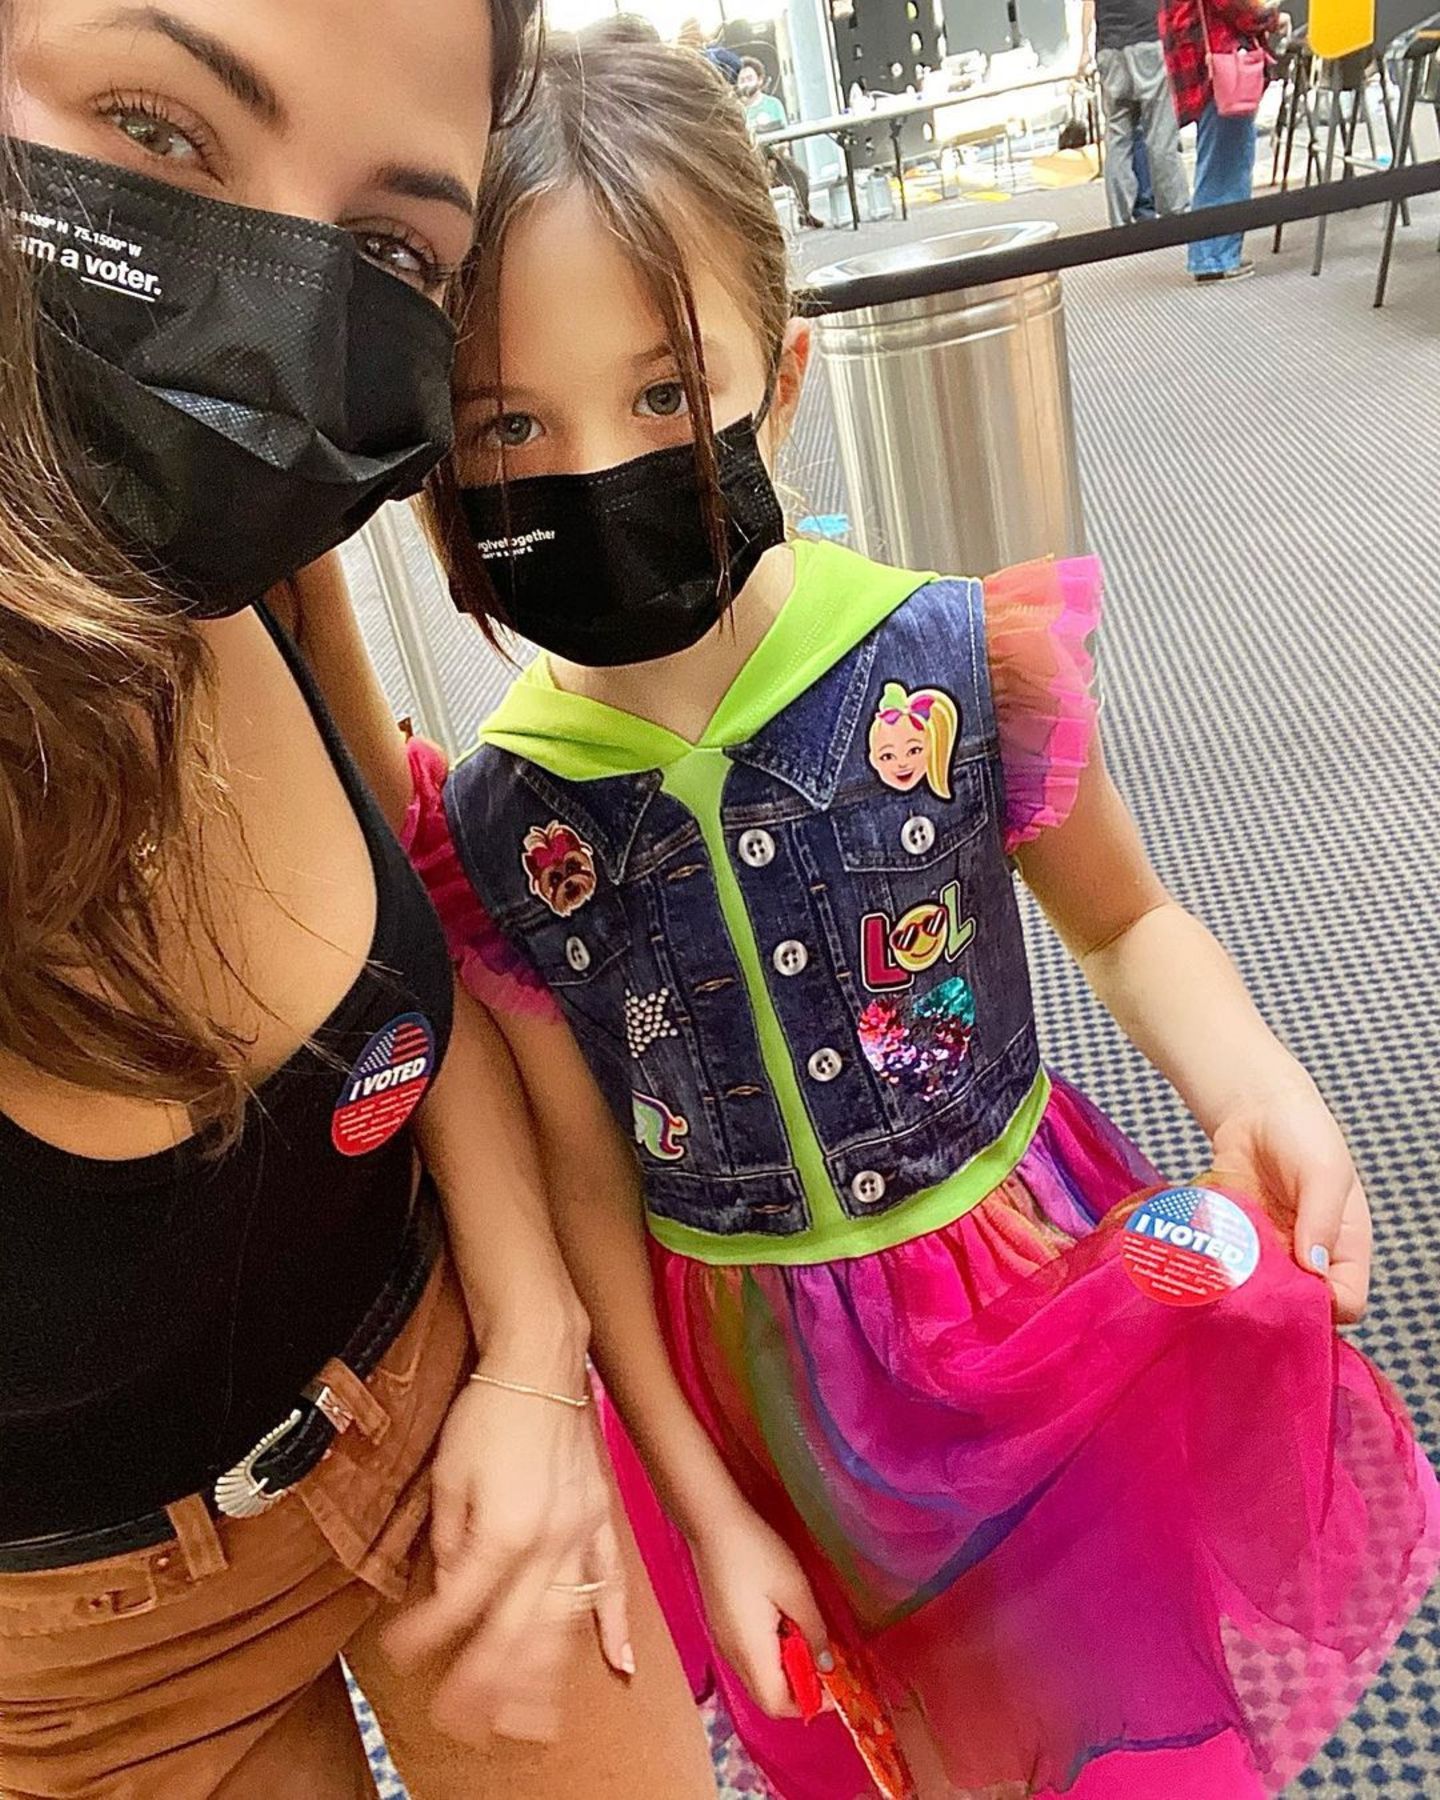 Zusammen mit Tochter Eevie verlässt Jenna Dewan das Wahllokal. "Ich hoffe, wir bringen diesem Land wieder Heilung, Gleichberechtigung und Vereinigung", schreibt sie dazu auf Instagram.